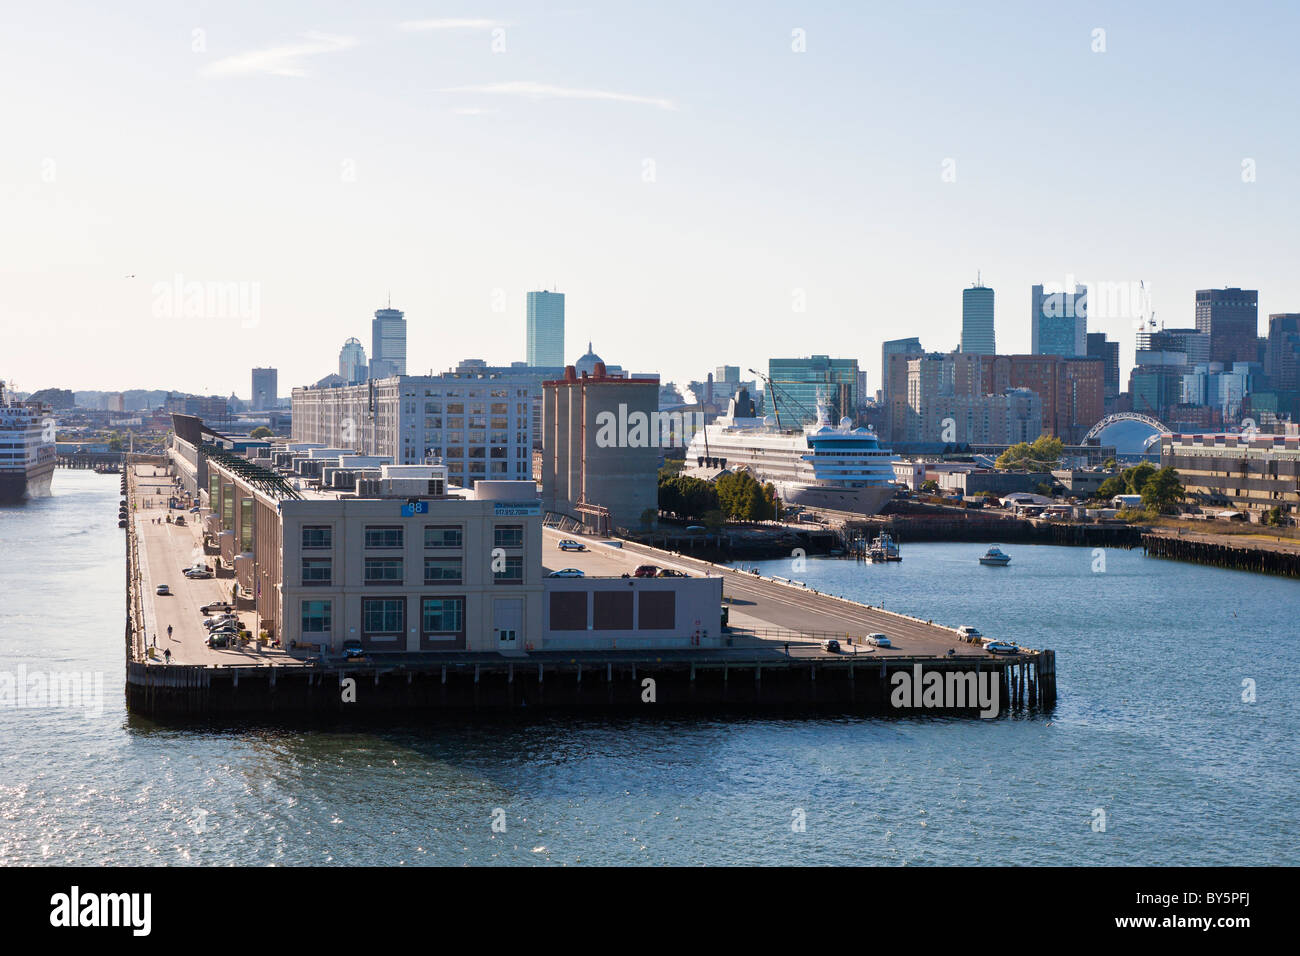 Ciudad de Boston, Massachusetts acecha detrás de los almacenes de los muelles del Puerto de Boston Foto de stock